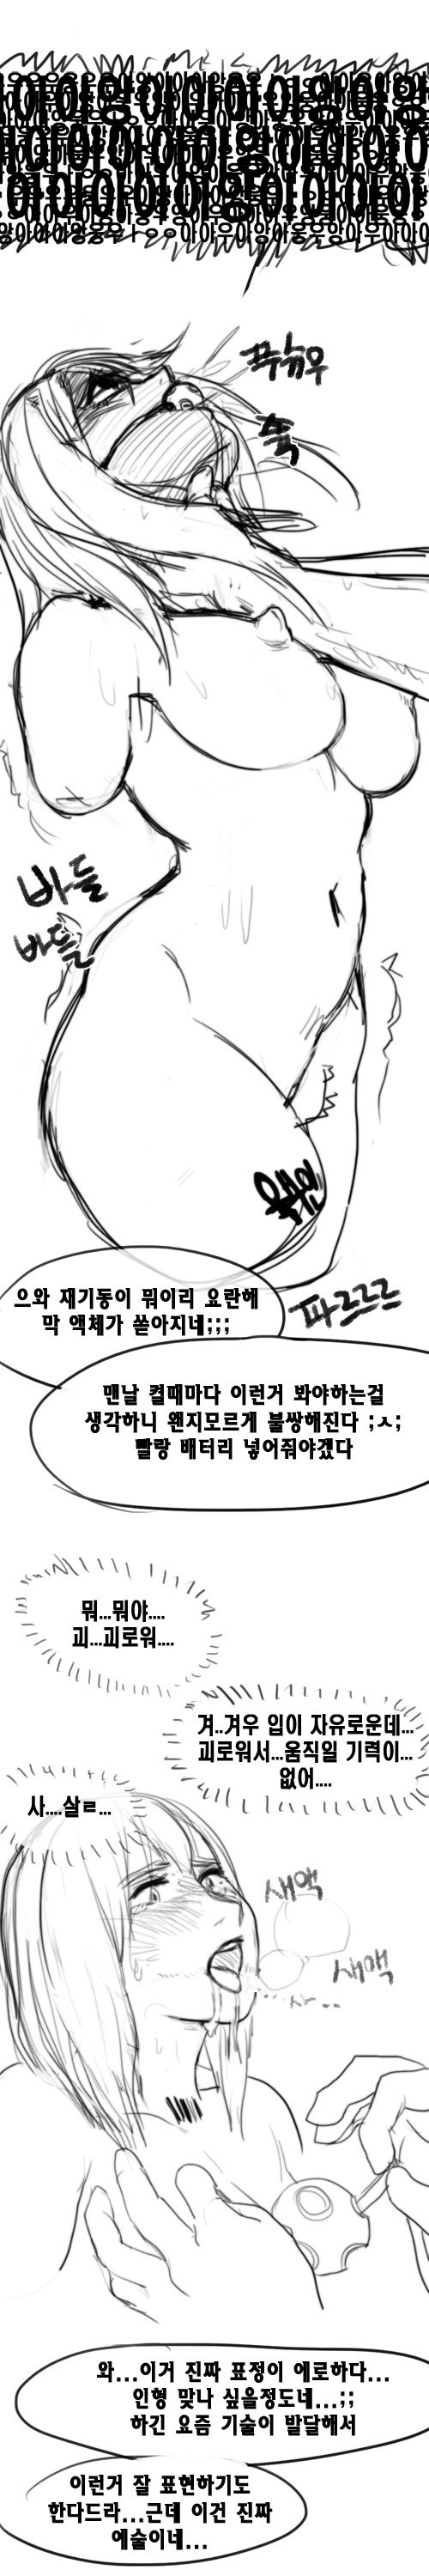 [캬 명작이네] - 육부인 구입하는만화 - [Korean] 